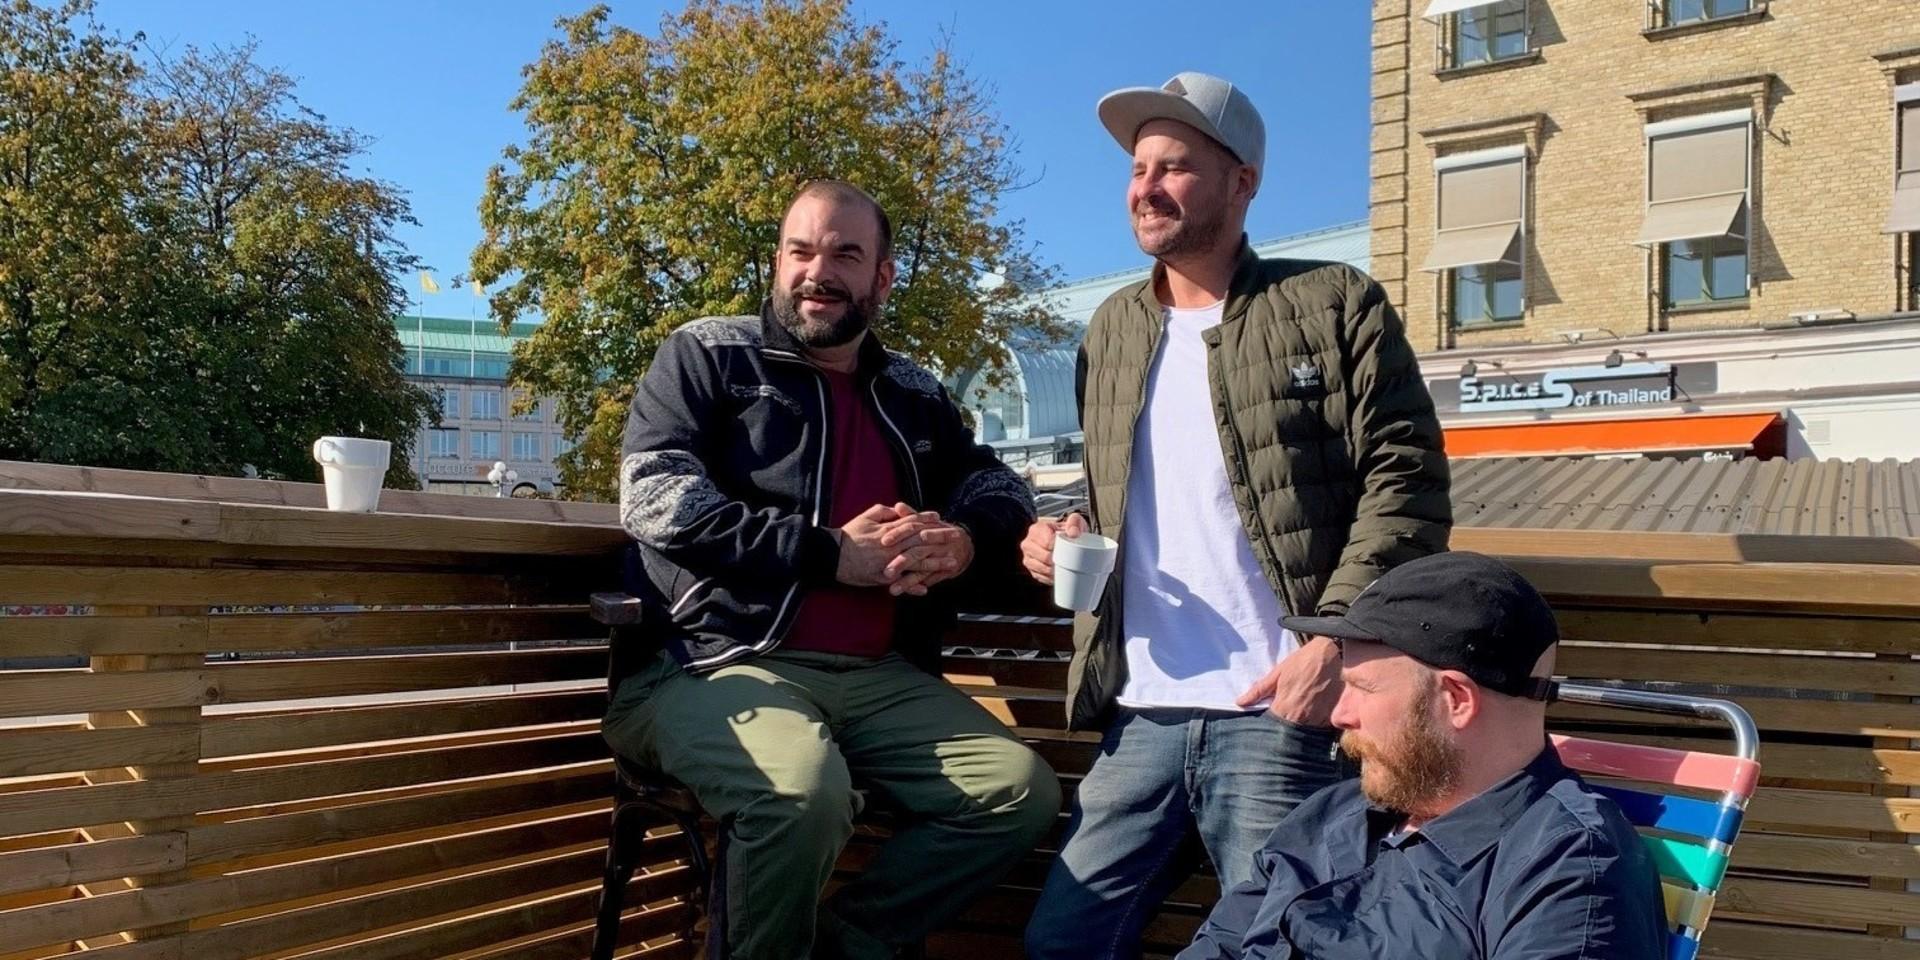 Antonio Rossiello Schön, David Haggren och Joel Sjöholm öppnar i höst fiskbaren de tycker fattas Göteborg.